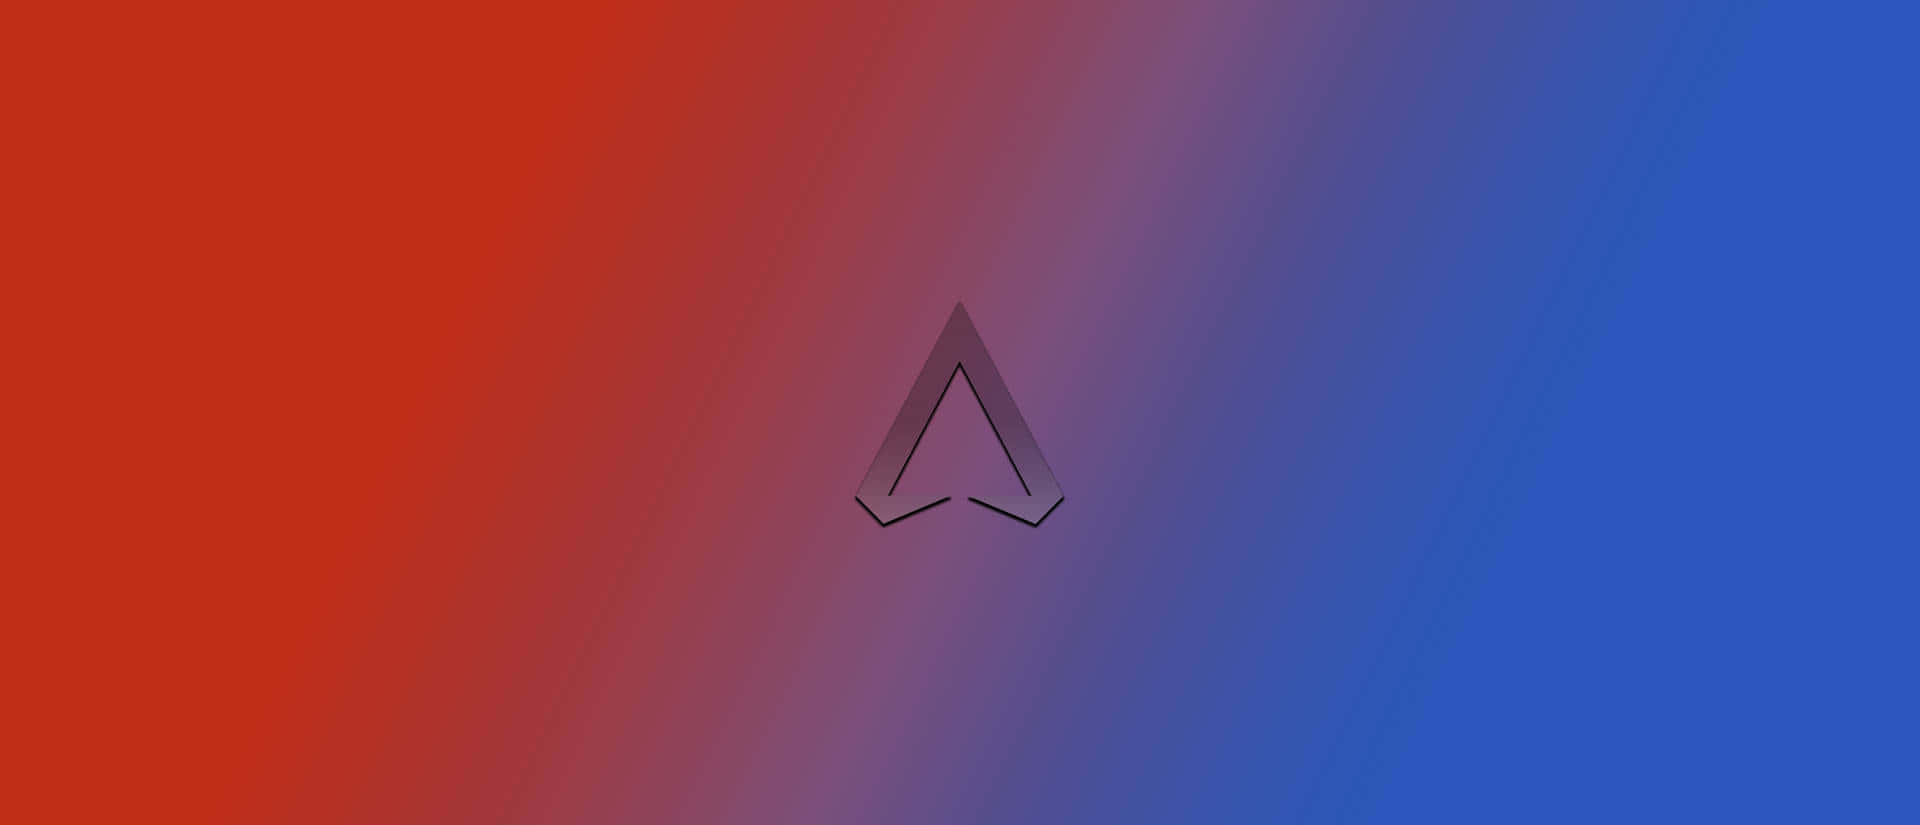 Logotipode Apex Legends En Rojo Y Azul Fondo de pantalla